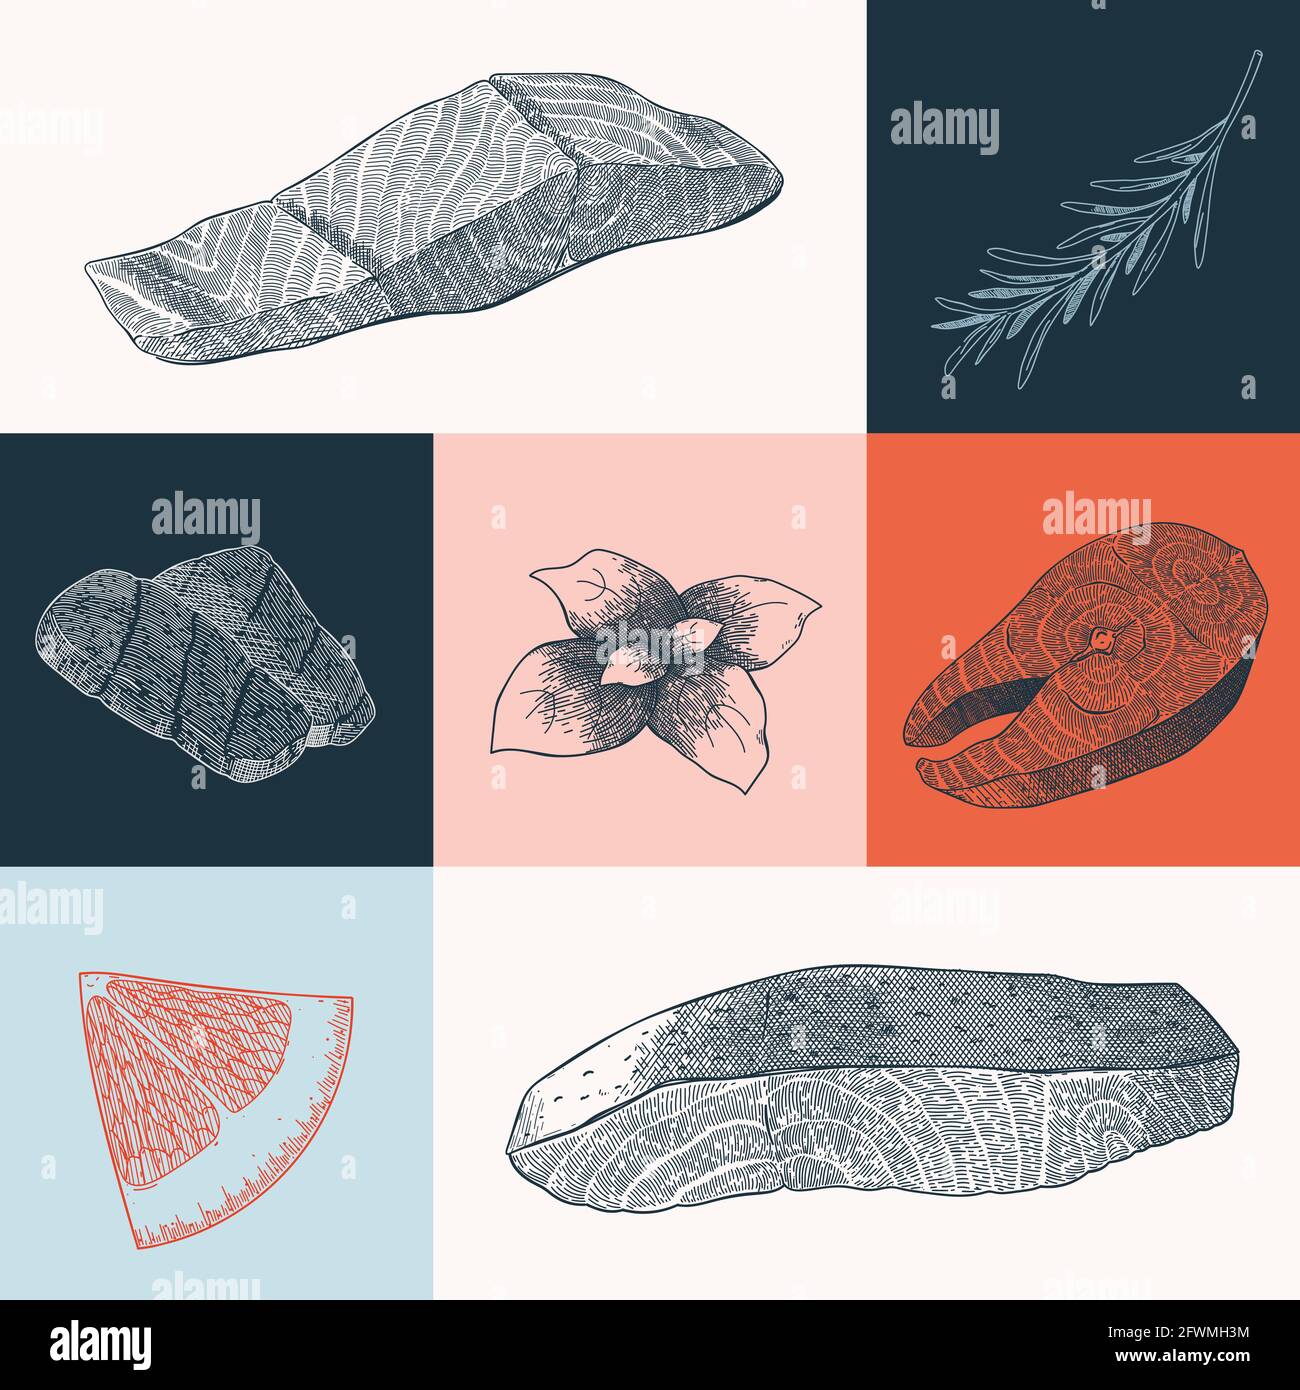 Affiche avec illustration de poissons de fruits de mer et de saumon, art à l'encre réaliste dessiné à la main, imprimé moderne pour le restaurant de fruits de mer Illustration de Vecteur